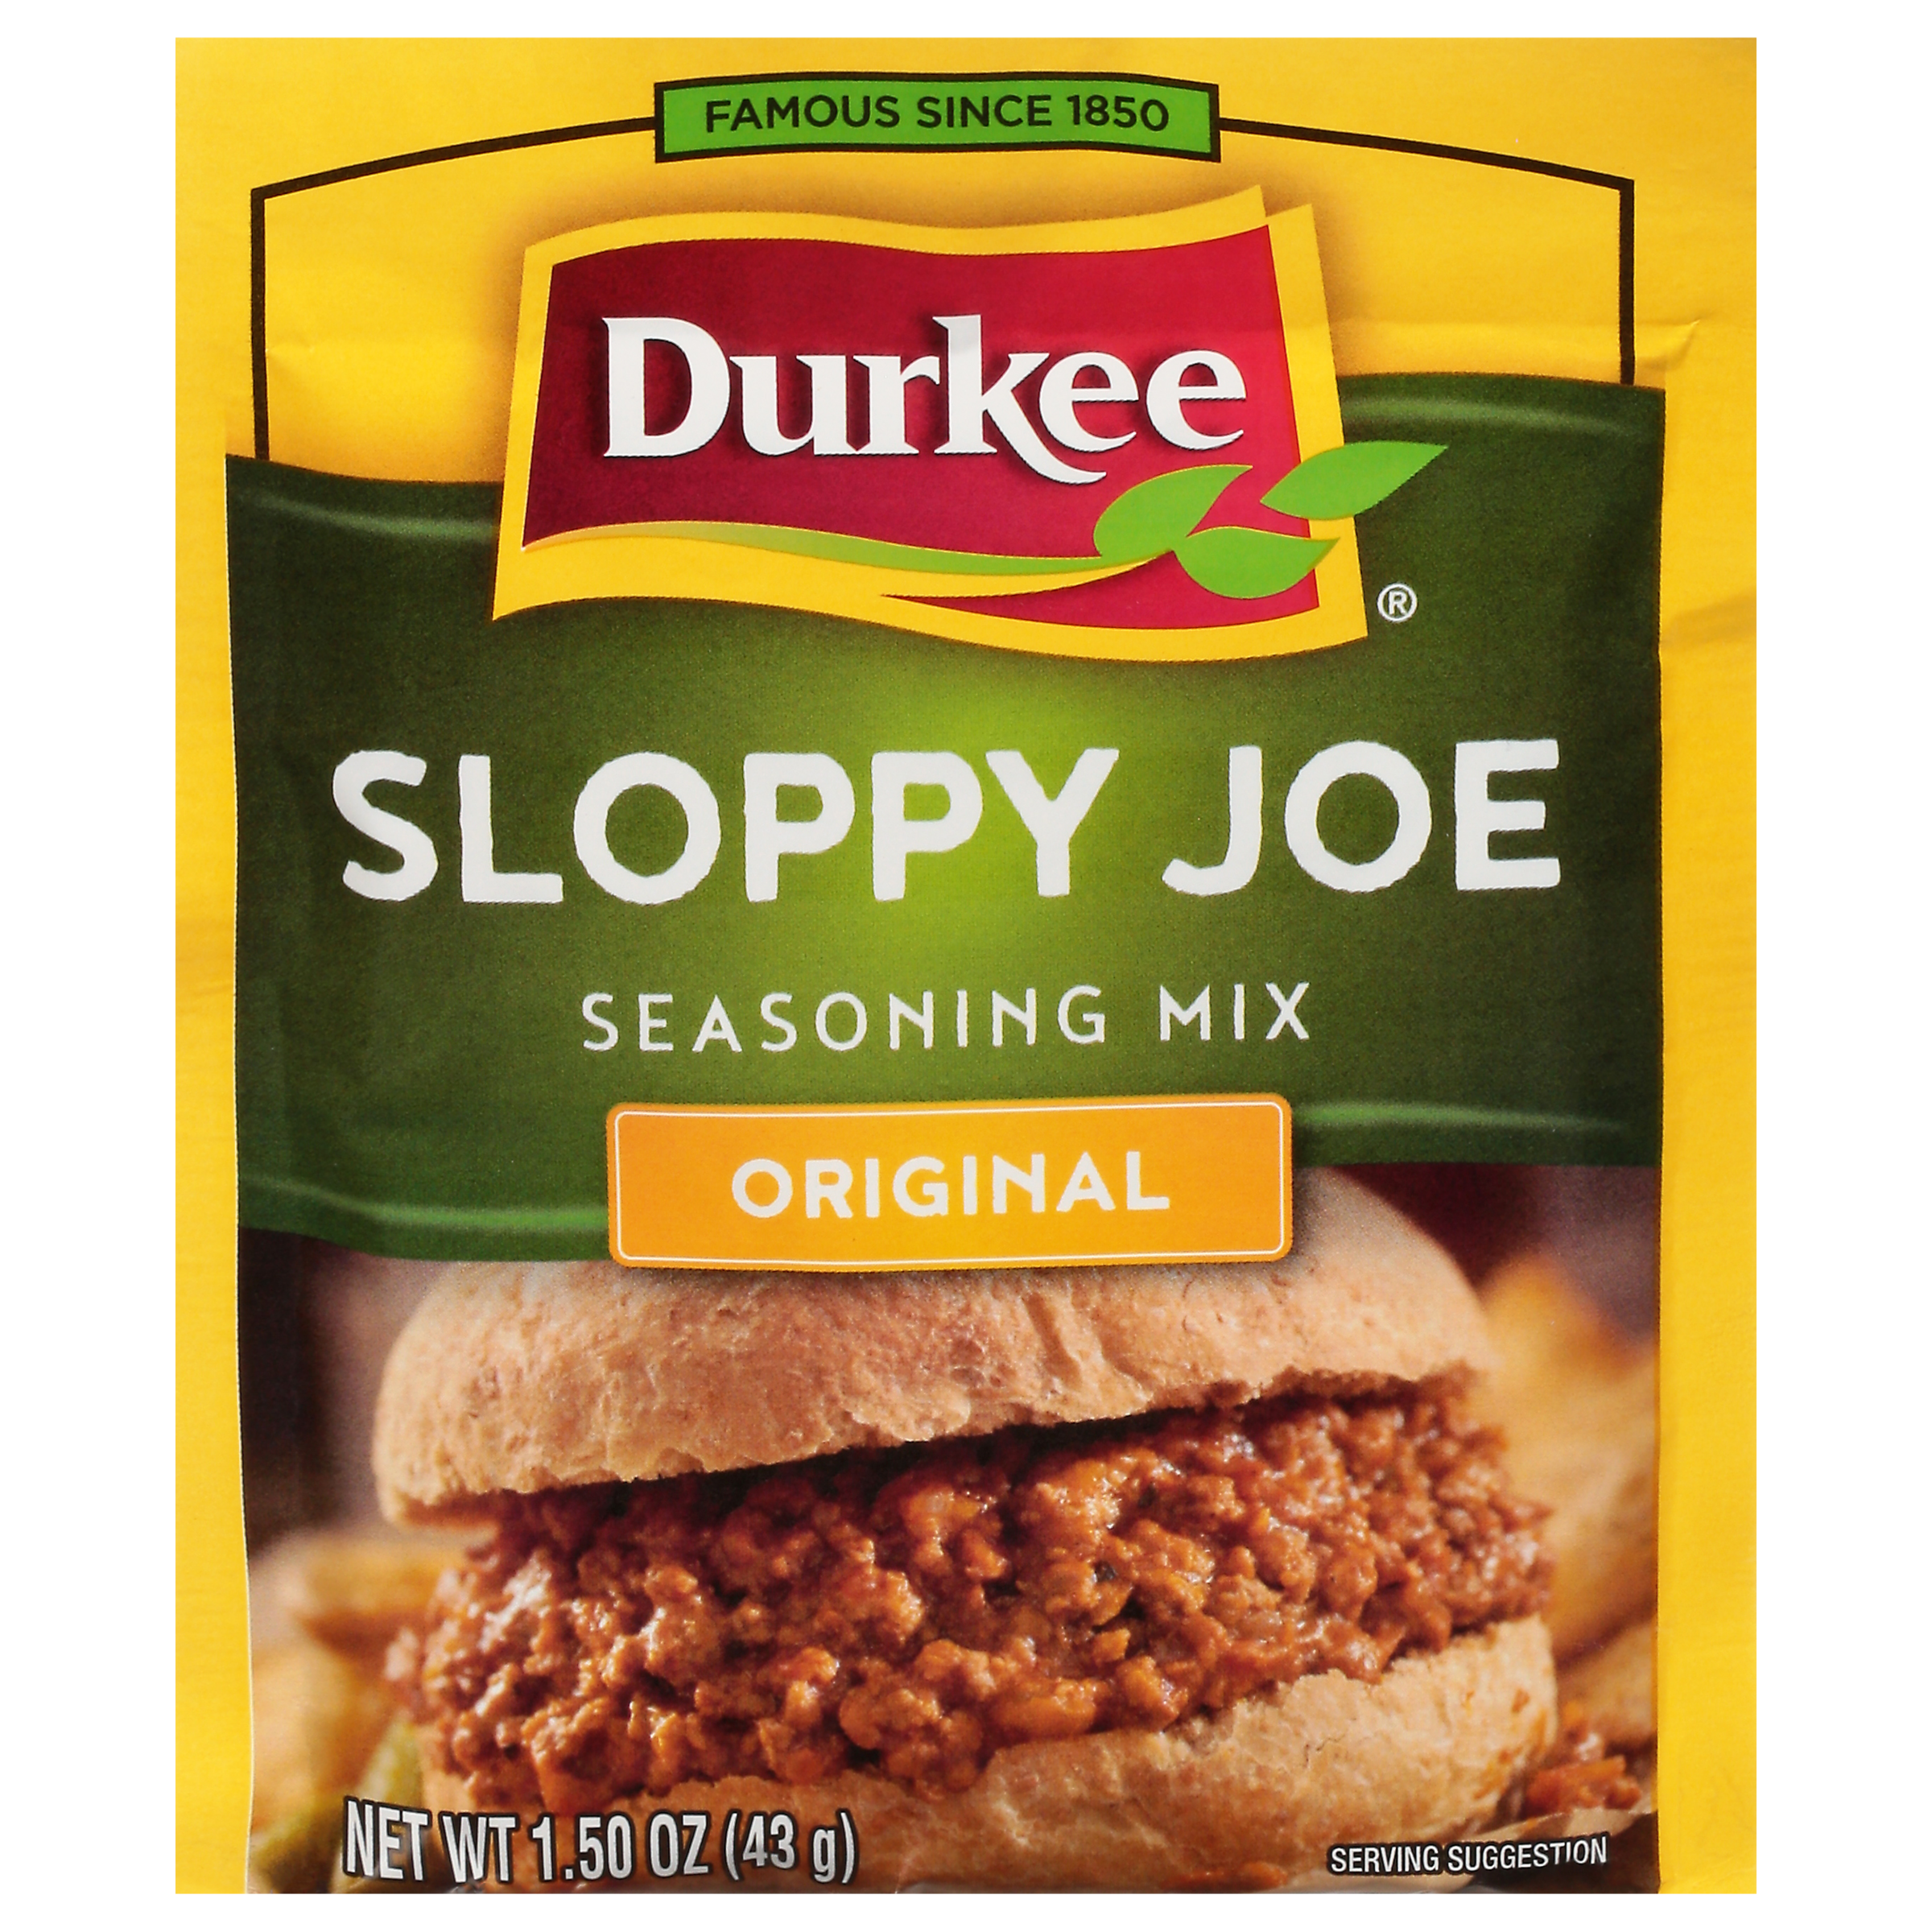 Sloppy Joe - Durkee